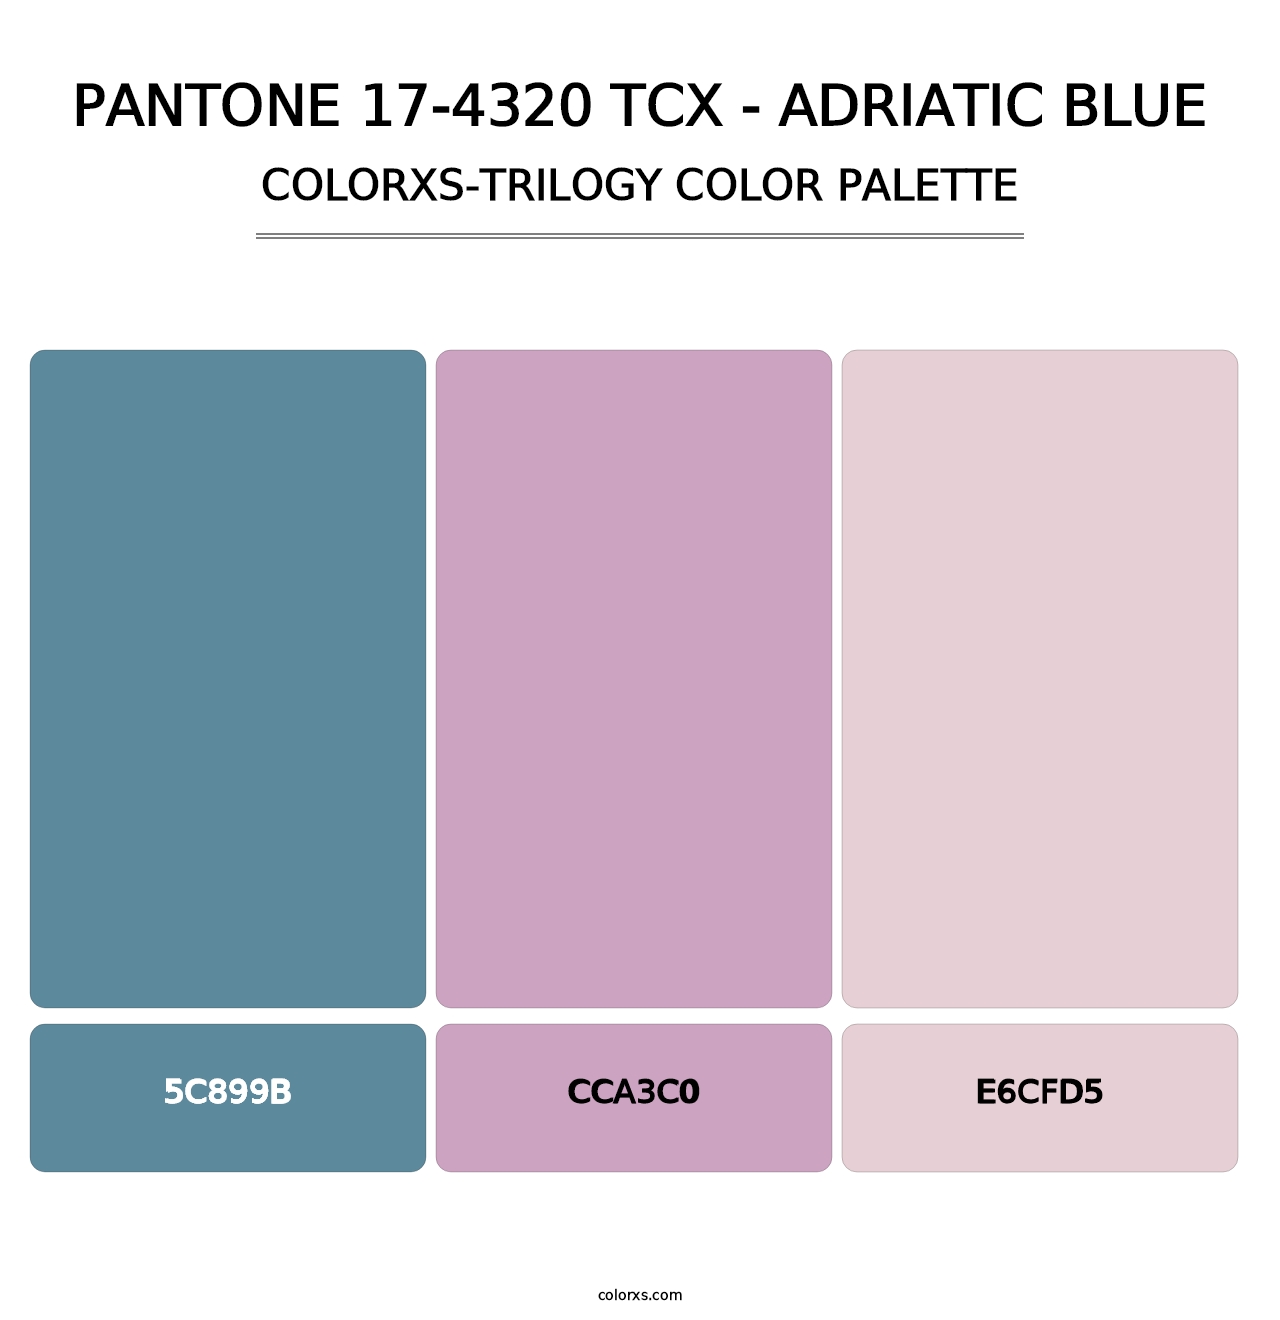 PANTONE 17-4320 TCX - Adriatic Blue - Colorxs Trilogy Palette